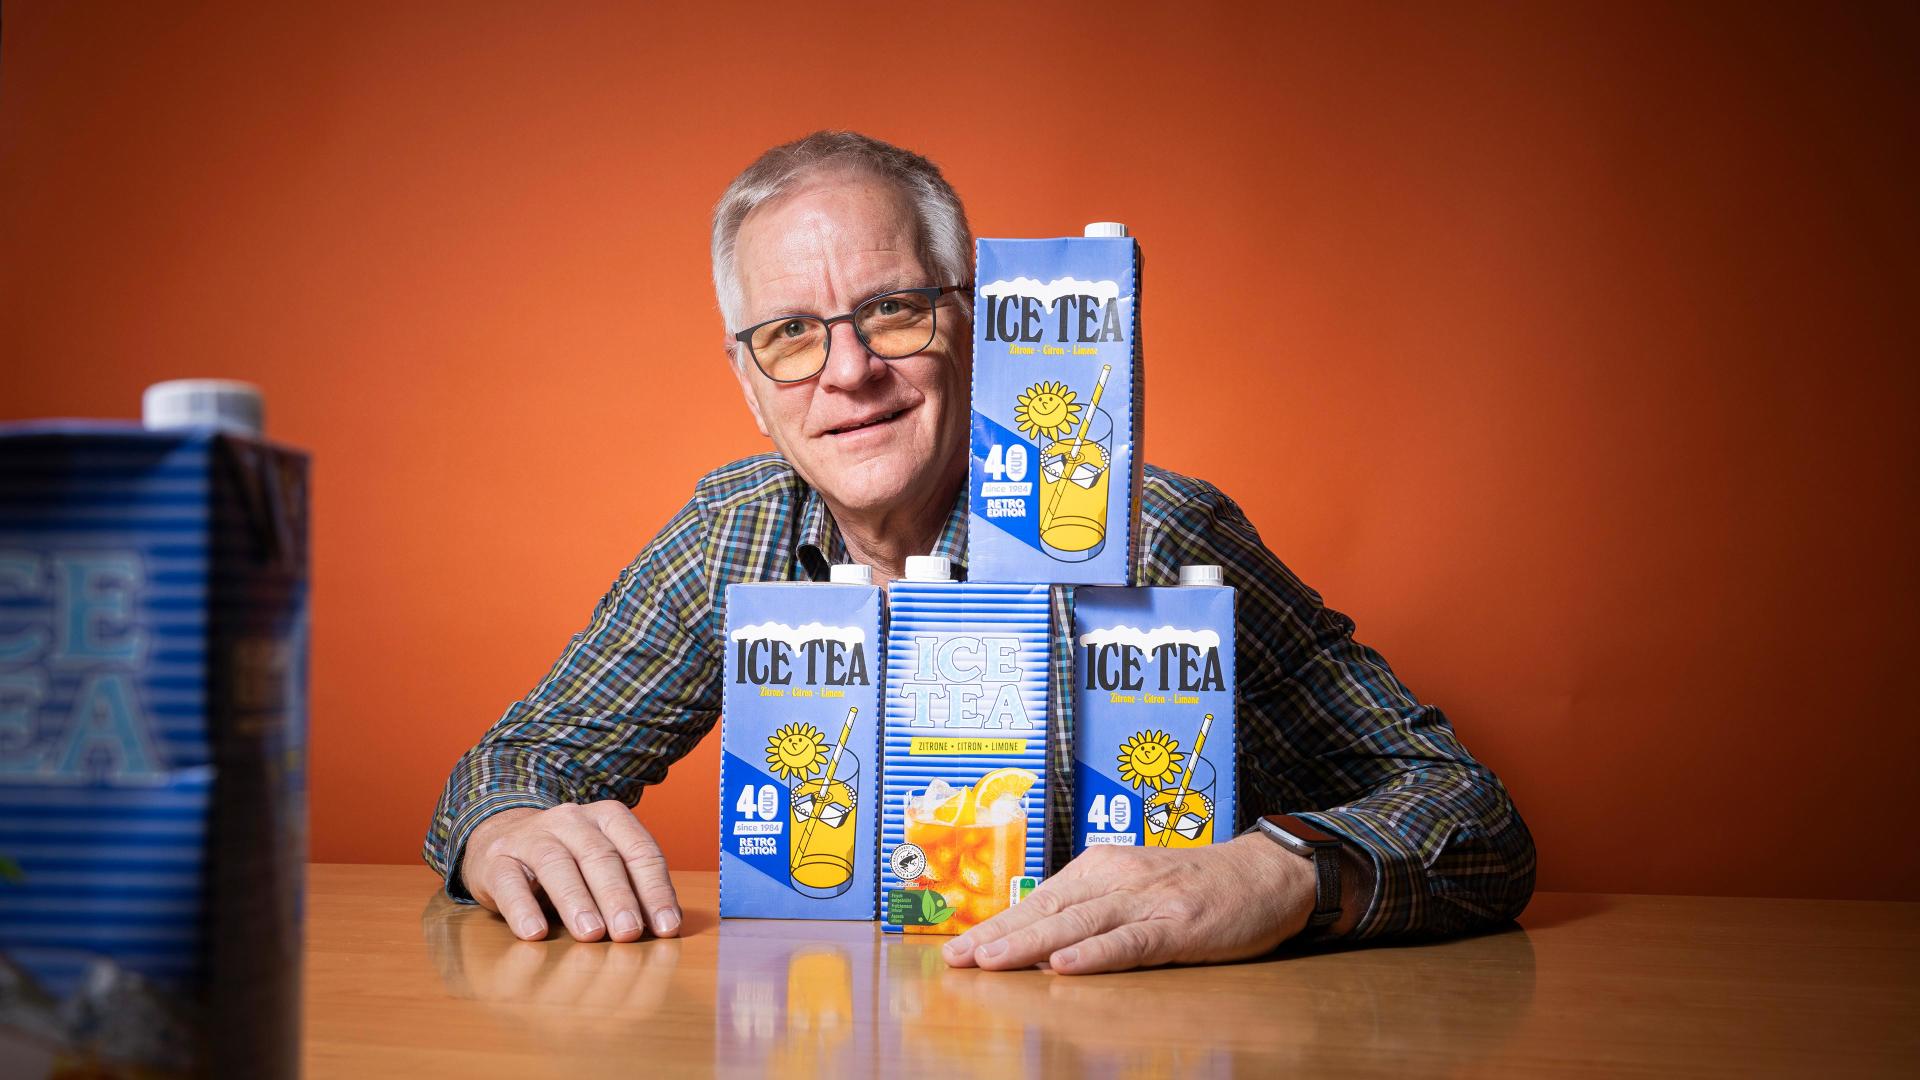 Kult Ice Tea inventor Ruedi Bärlocher